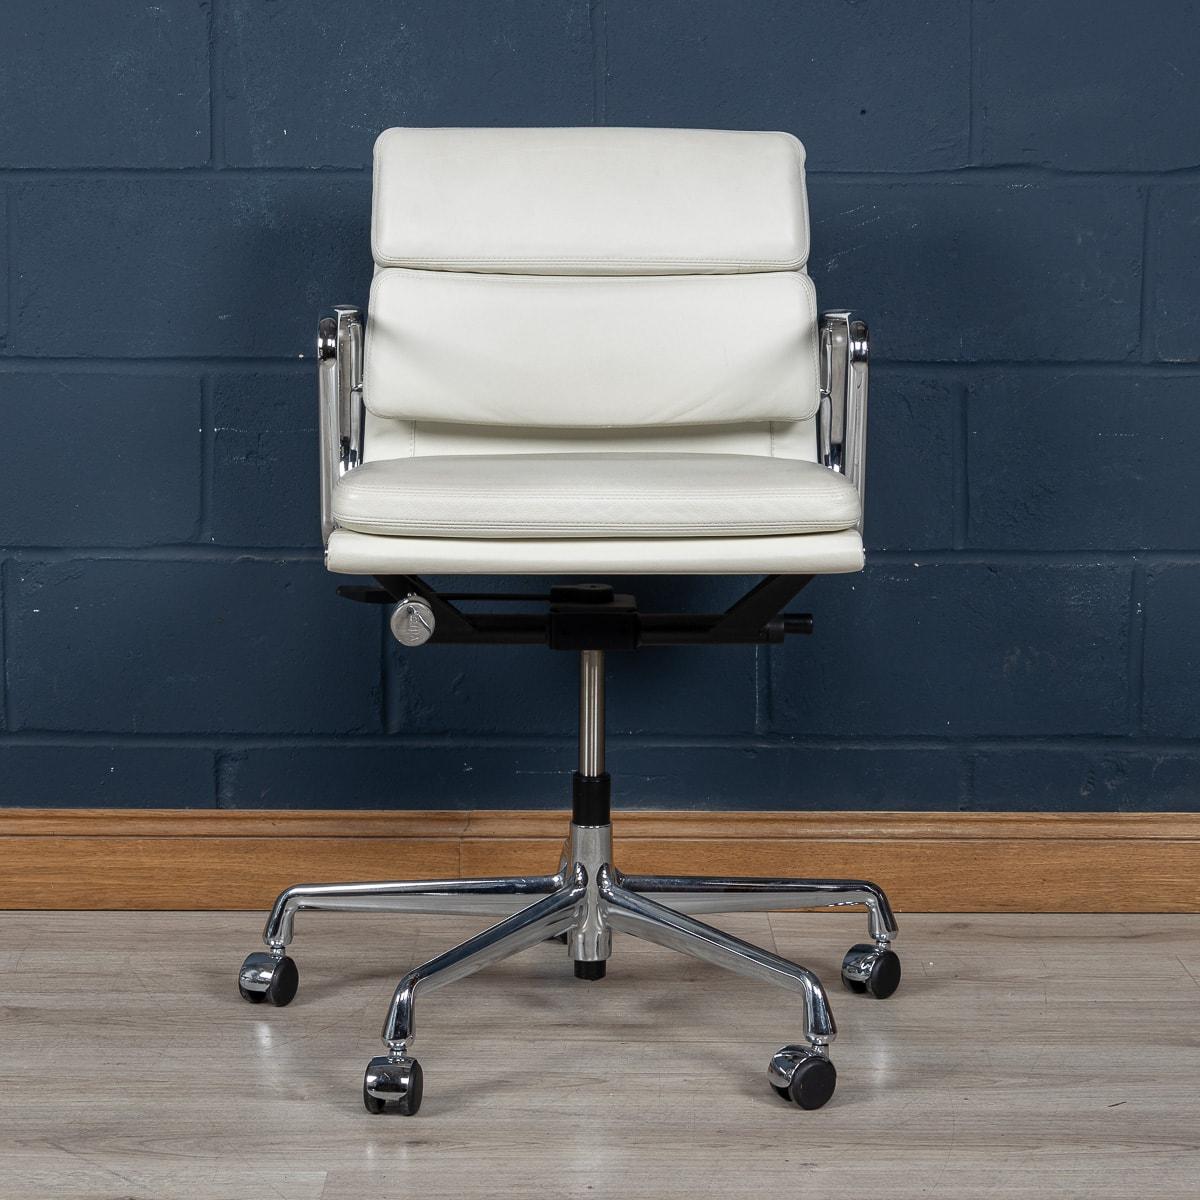 Ein atemberaubender Eames-Stuhl von Vitra, der erst vor kurzem hergestellt wurde, mit einem reizvollen weißen 